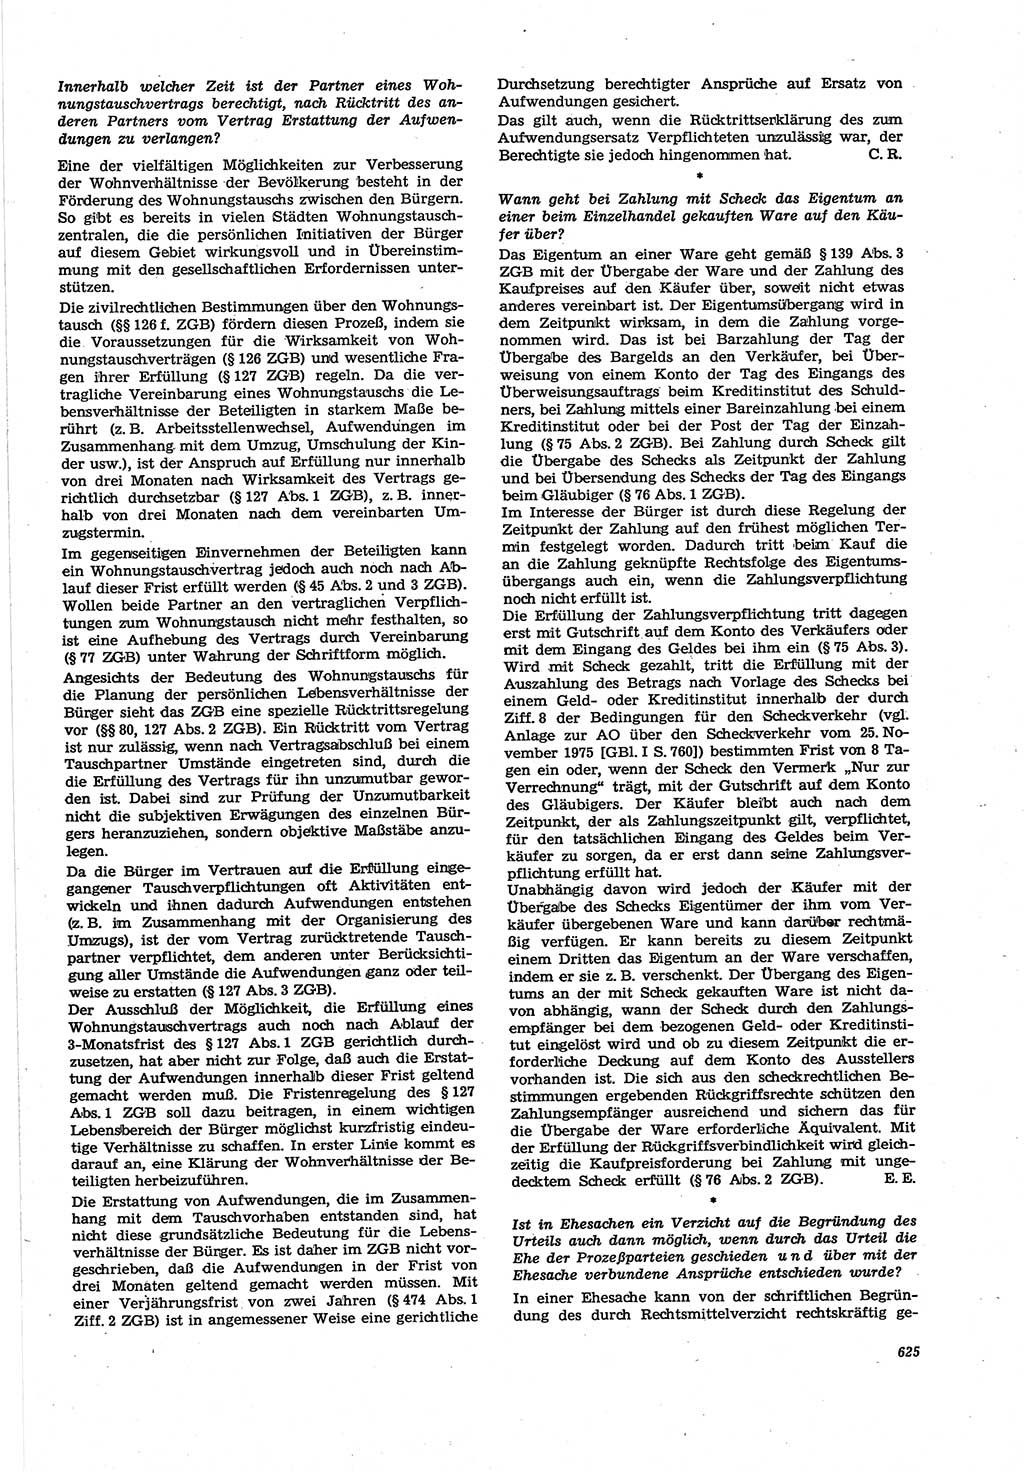 Neue Justiz (NJ), Zeitschrift für Recht und Rechtswissenschaft [Deutsche Demokratische Republik (DDR)], 30. Jahrgang 1976, Seite 625 (NJ DDR 1976, S. 625)